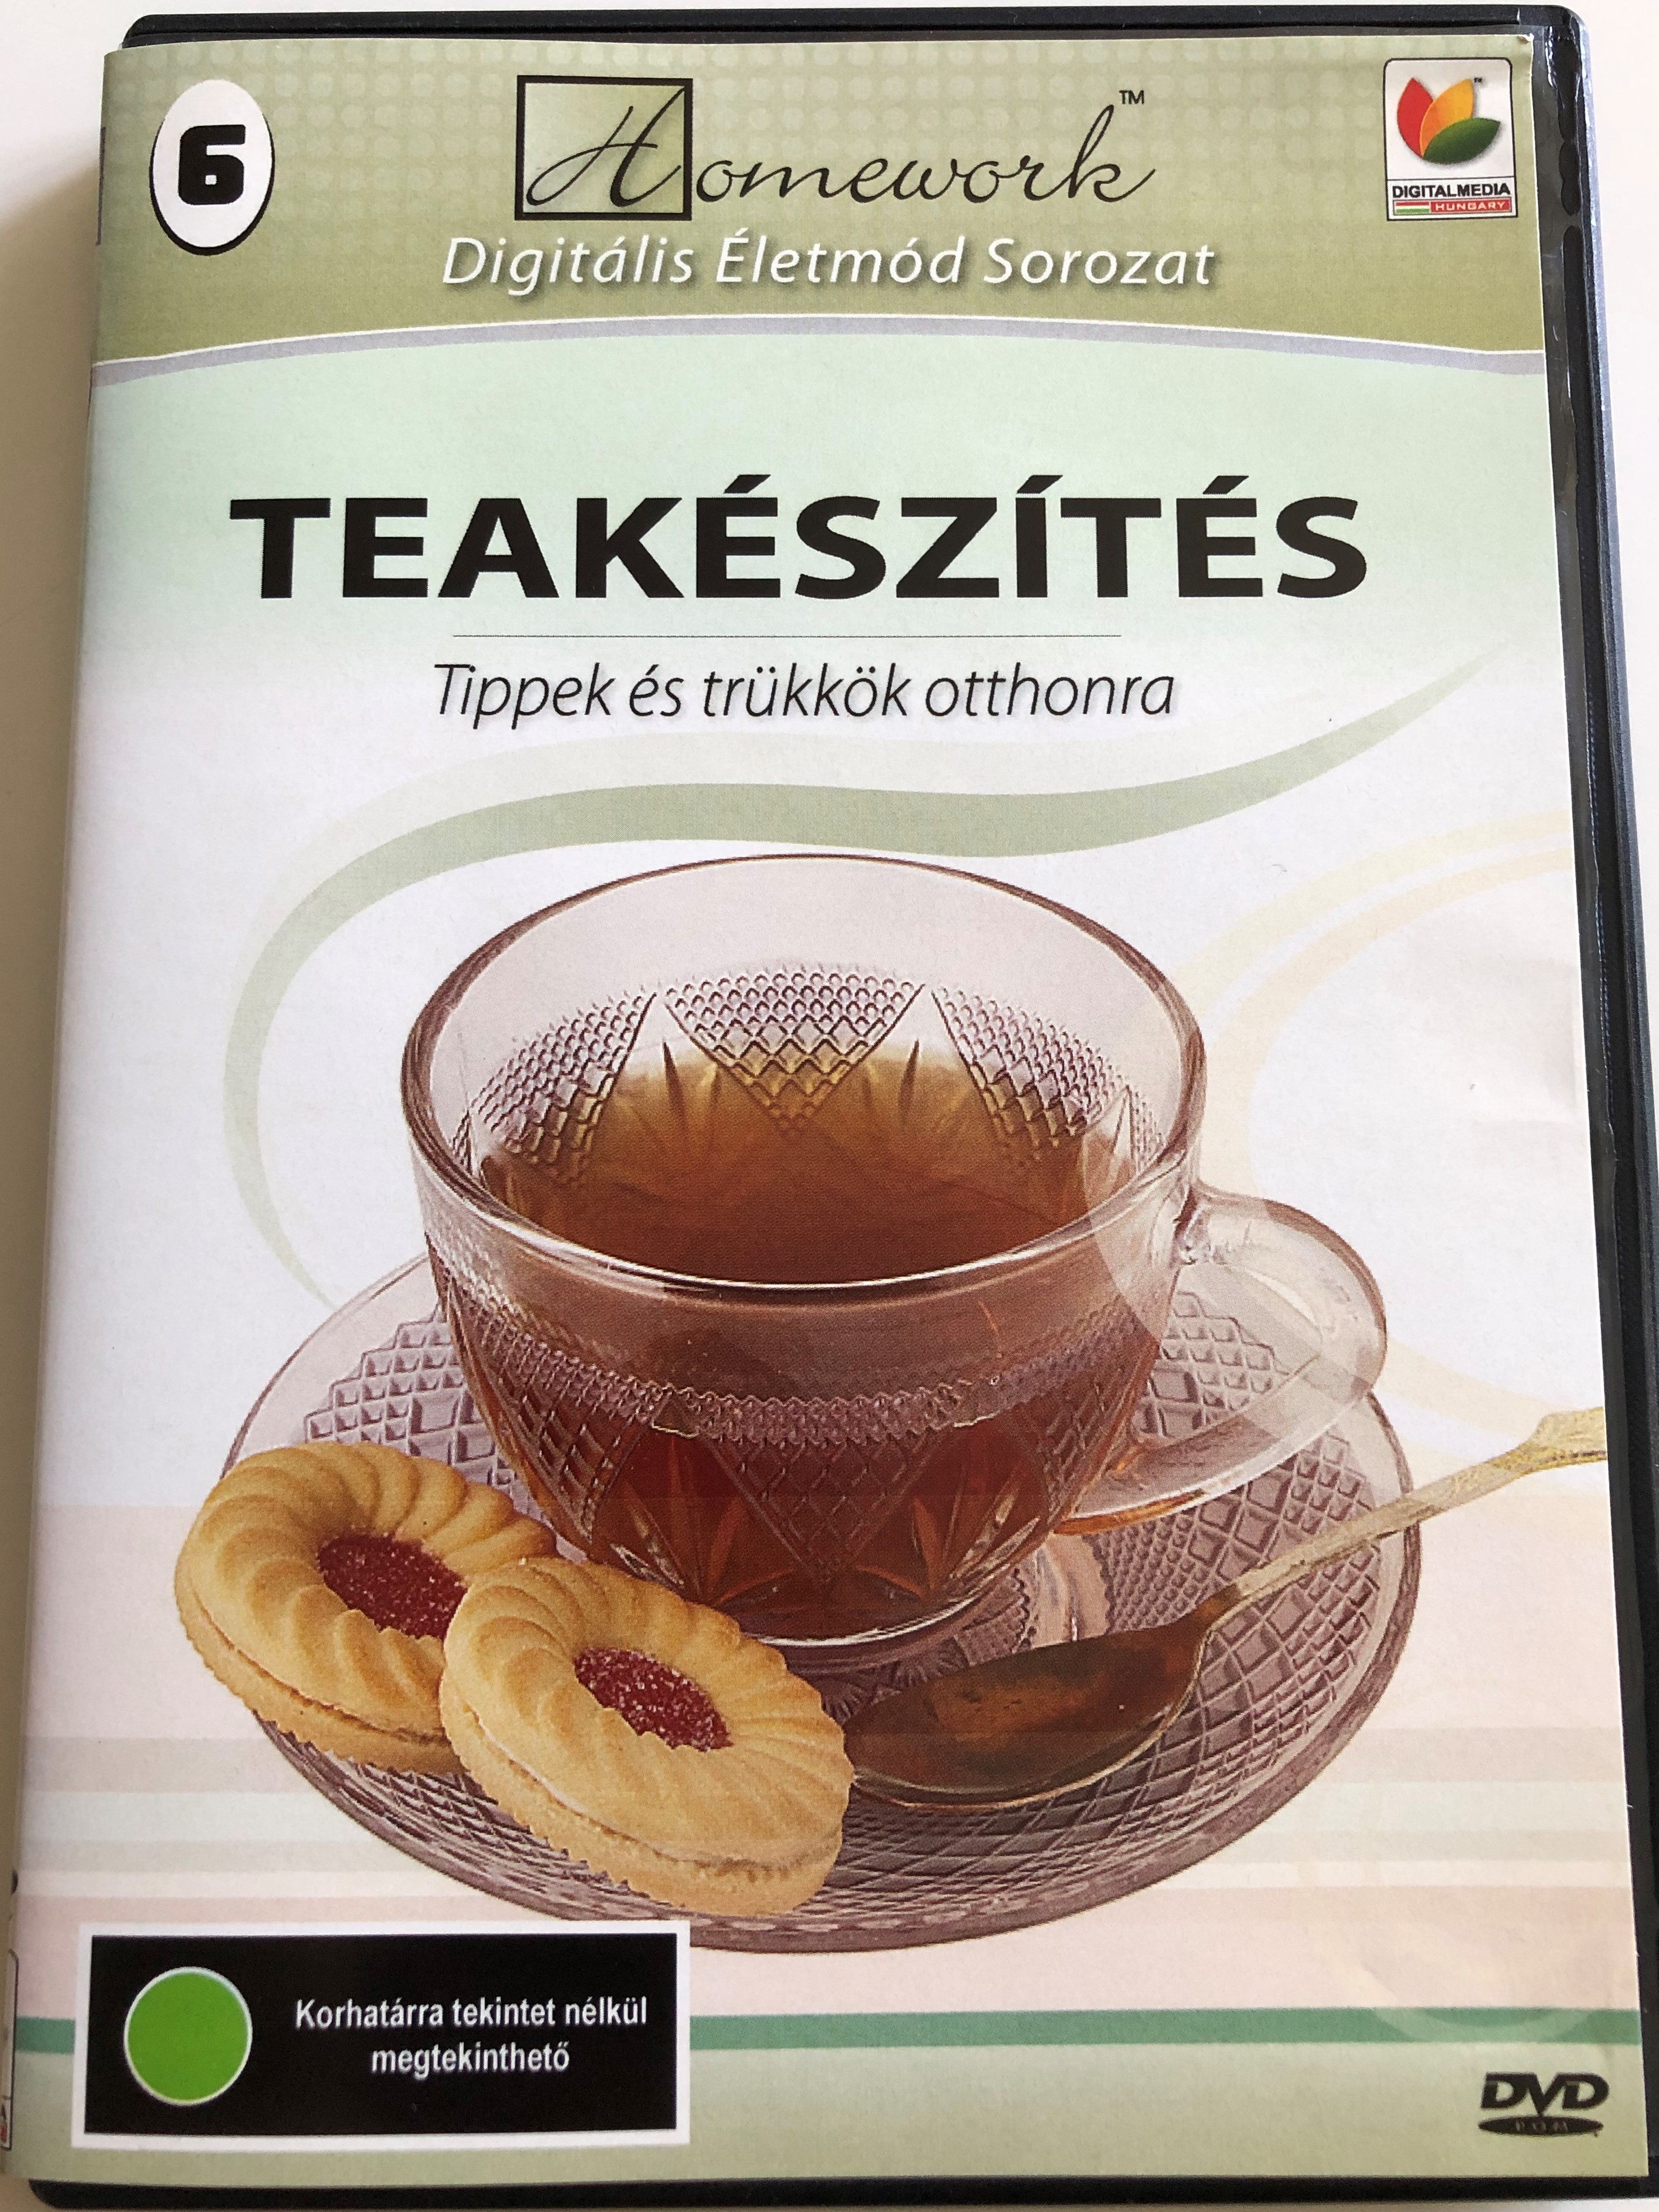 teak-sz-t-s-tippek-s-tr-kk-k-otthonra-dvd-2006-making-tea-tips-tricks-for-home-digitalmedia-hungary-desert-pictures-1-.jpg